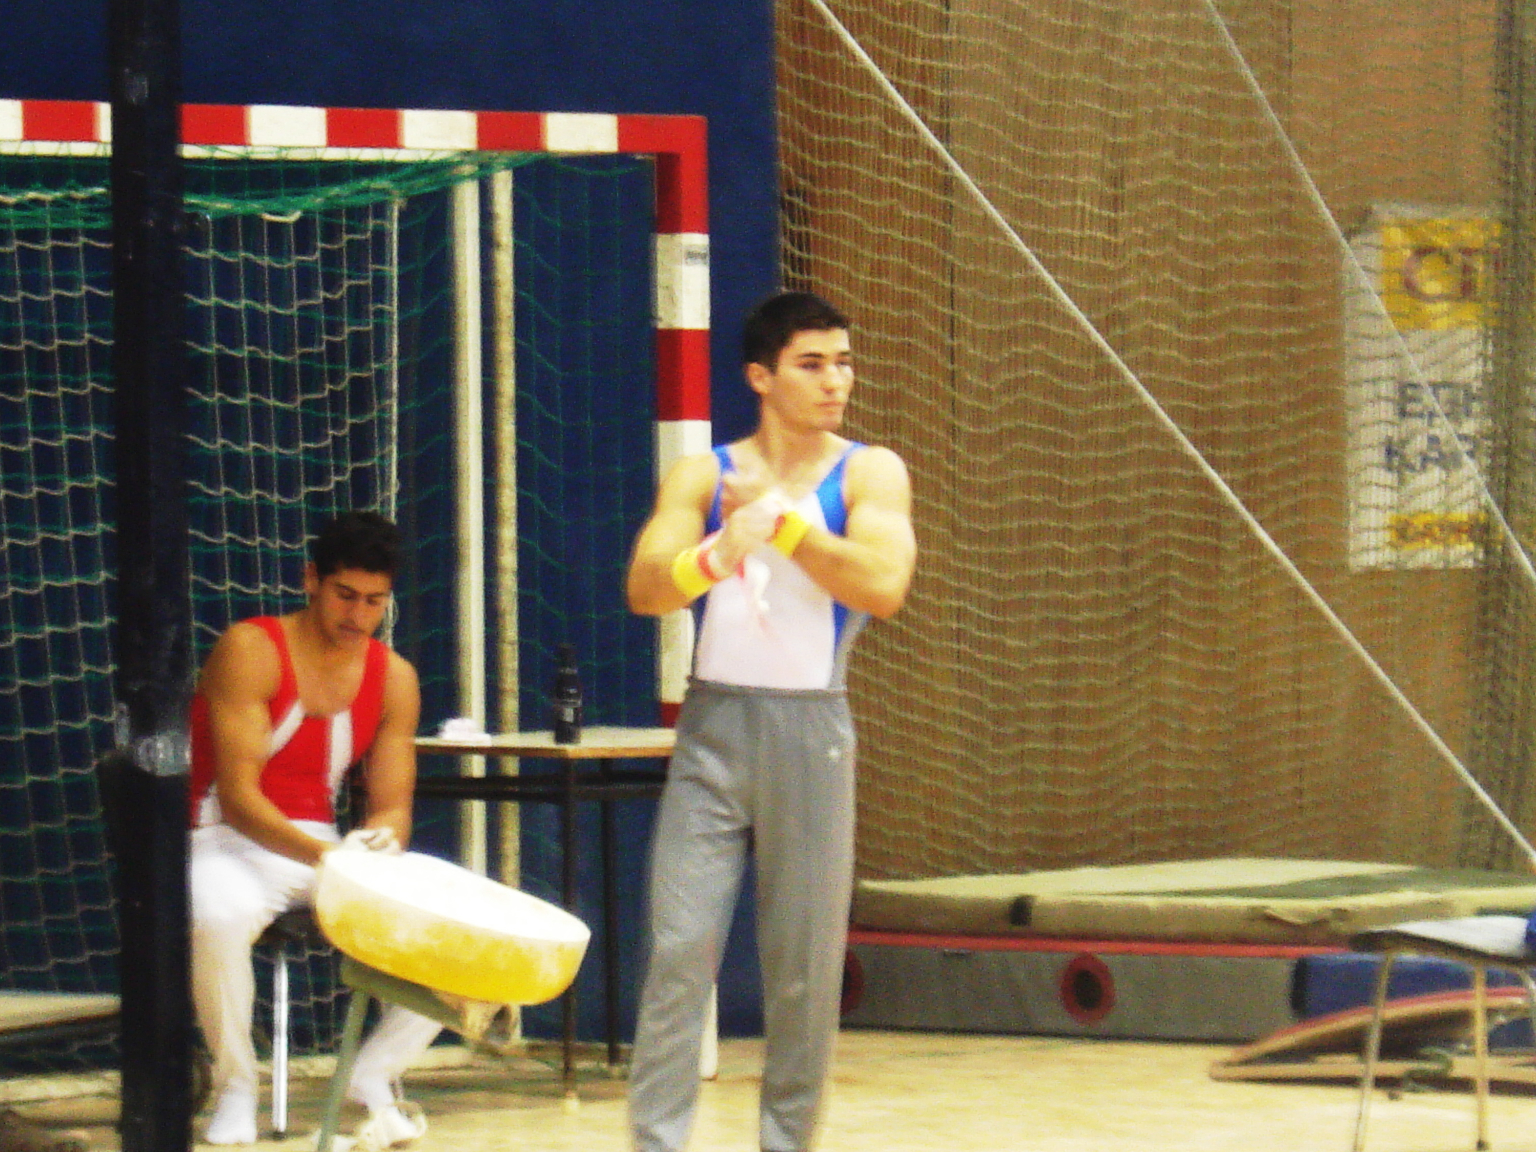 Kolimechkov at the 2007 National Championships